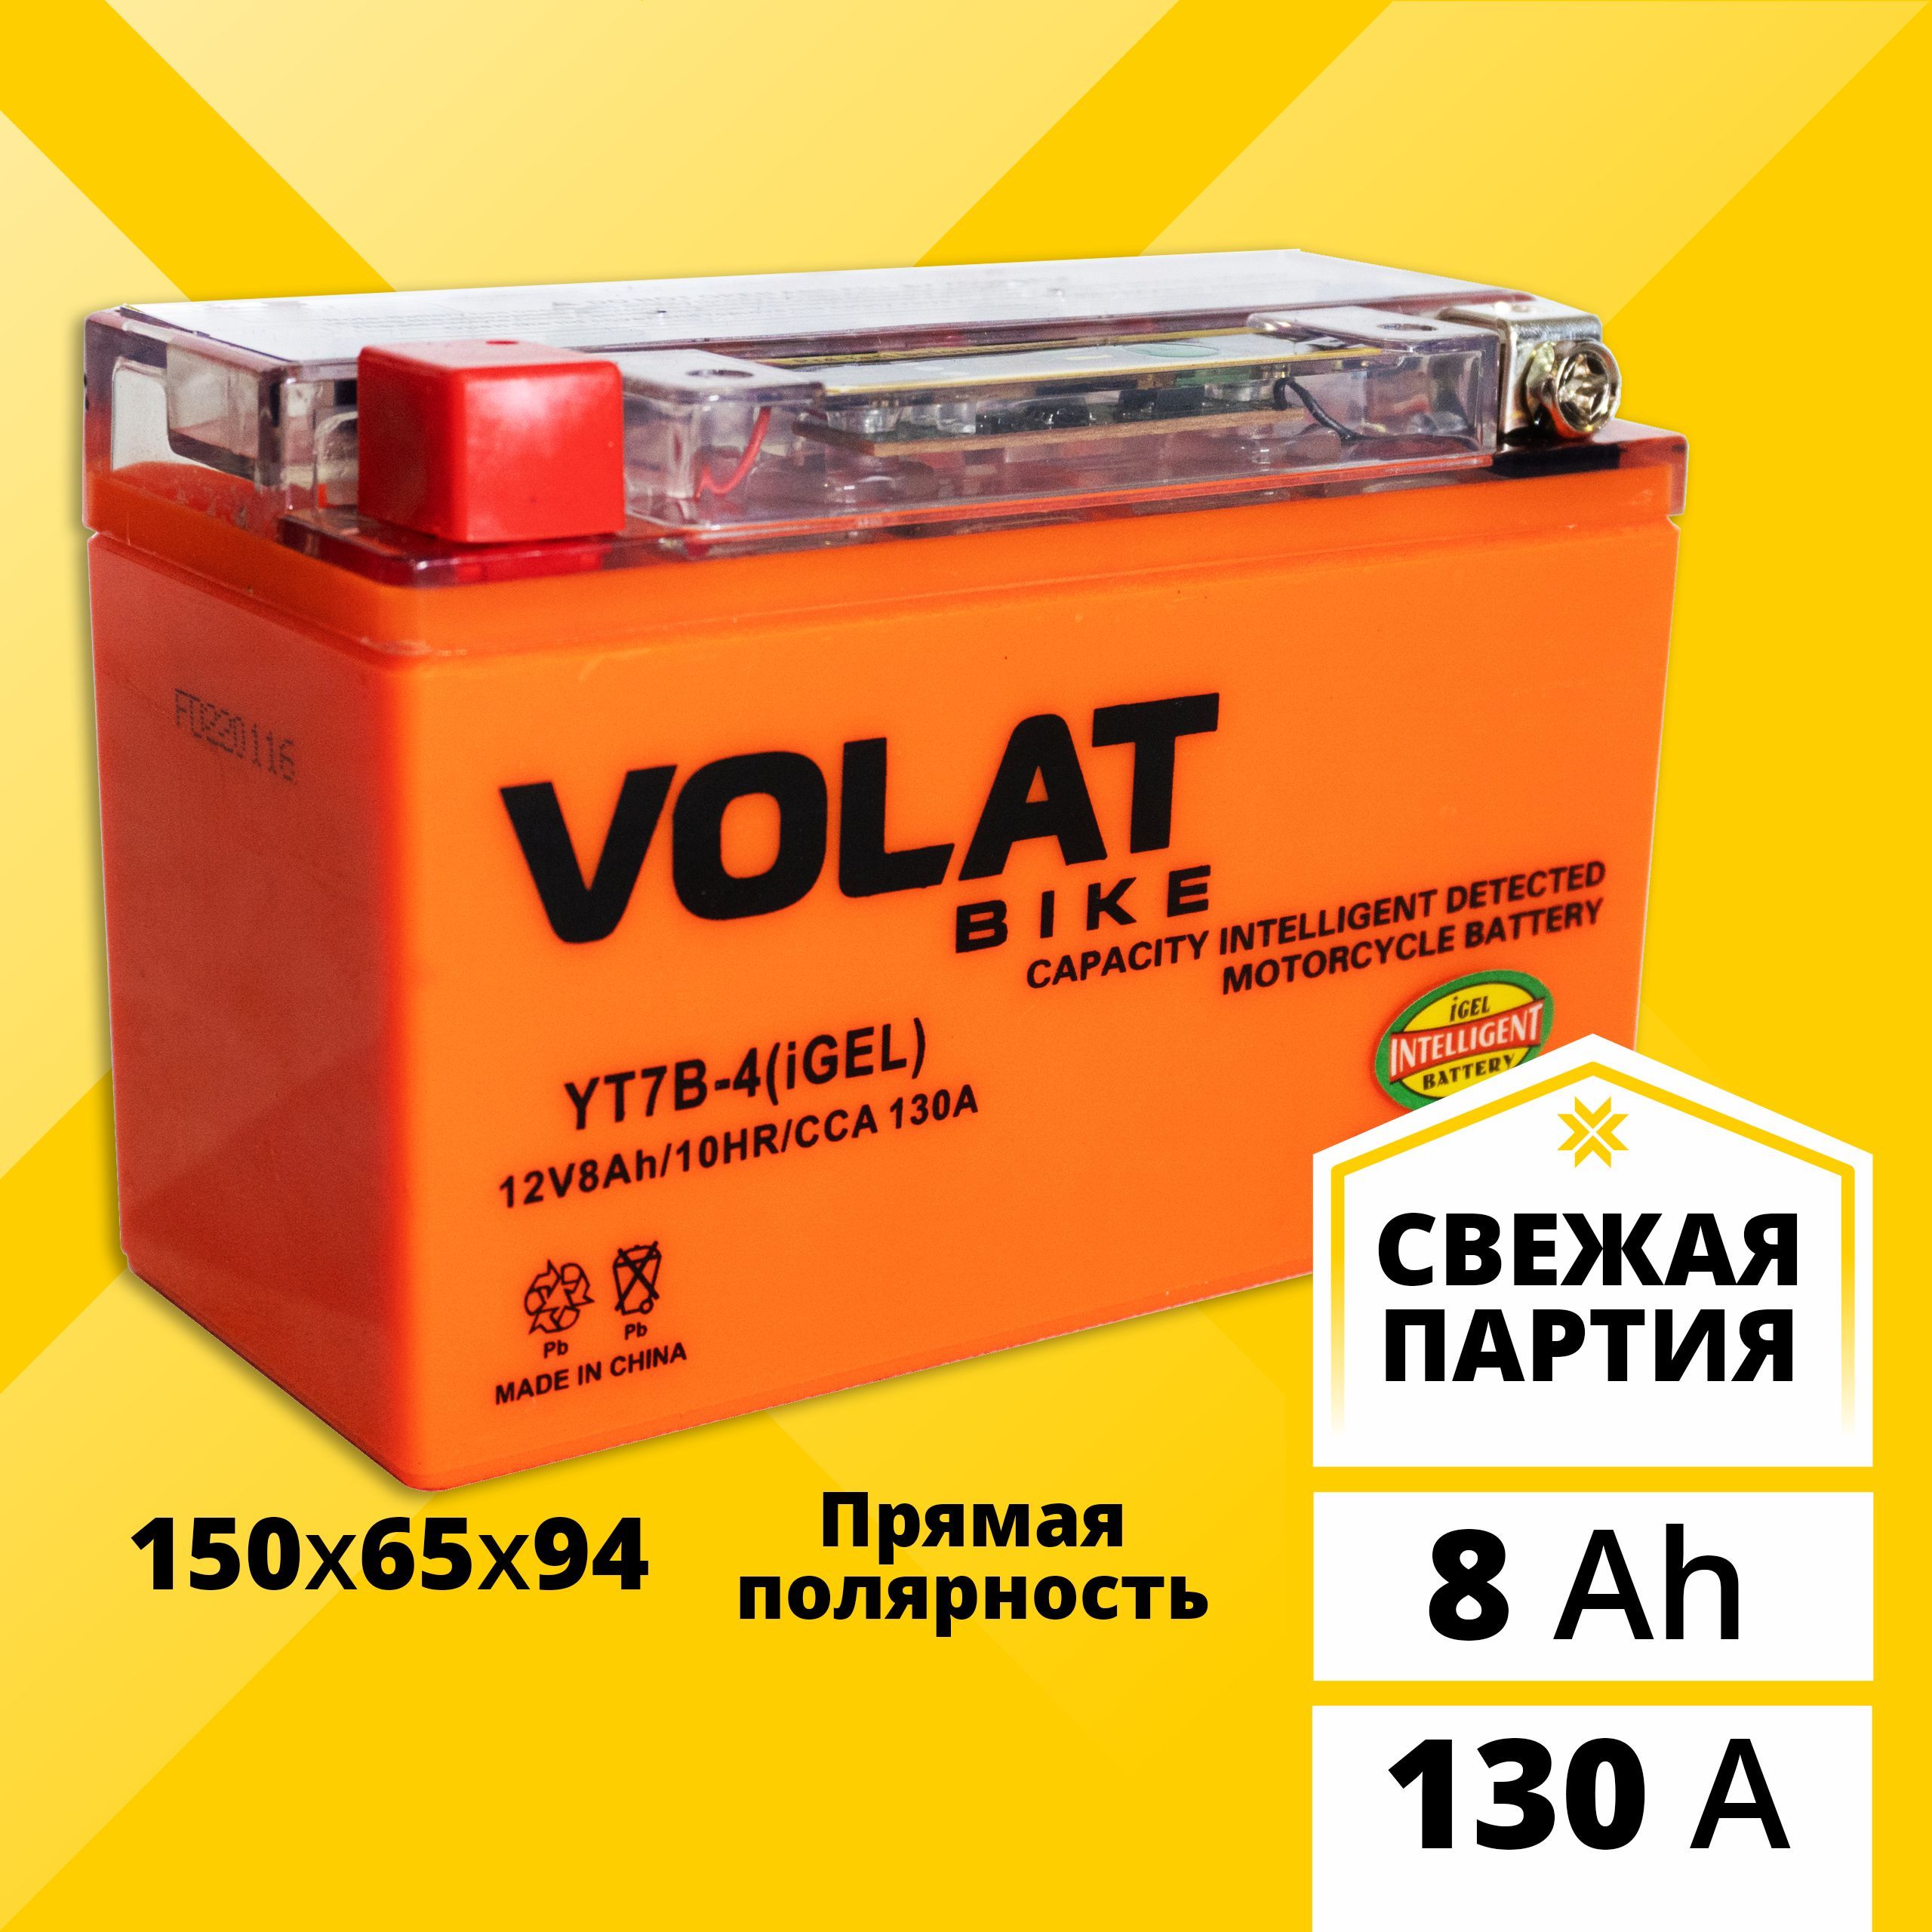 Аккумулятор для мотоцикла VOLAT 12в гелевый 8 Ah 130 A прямая полярность YT7B-4 (iGEL)